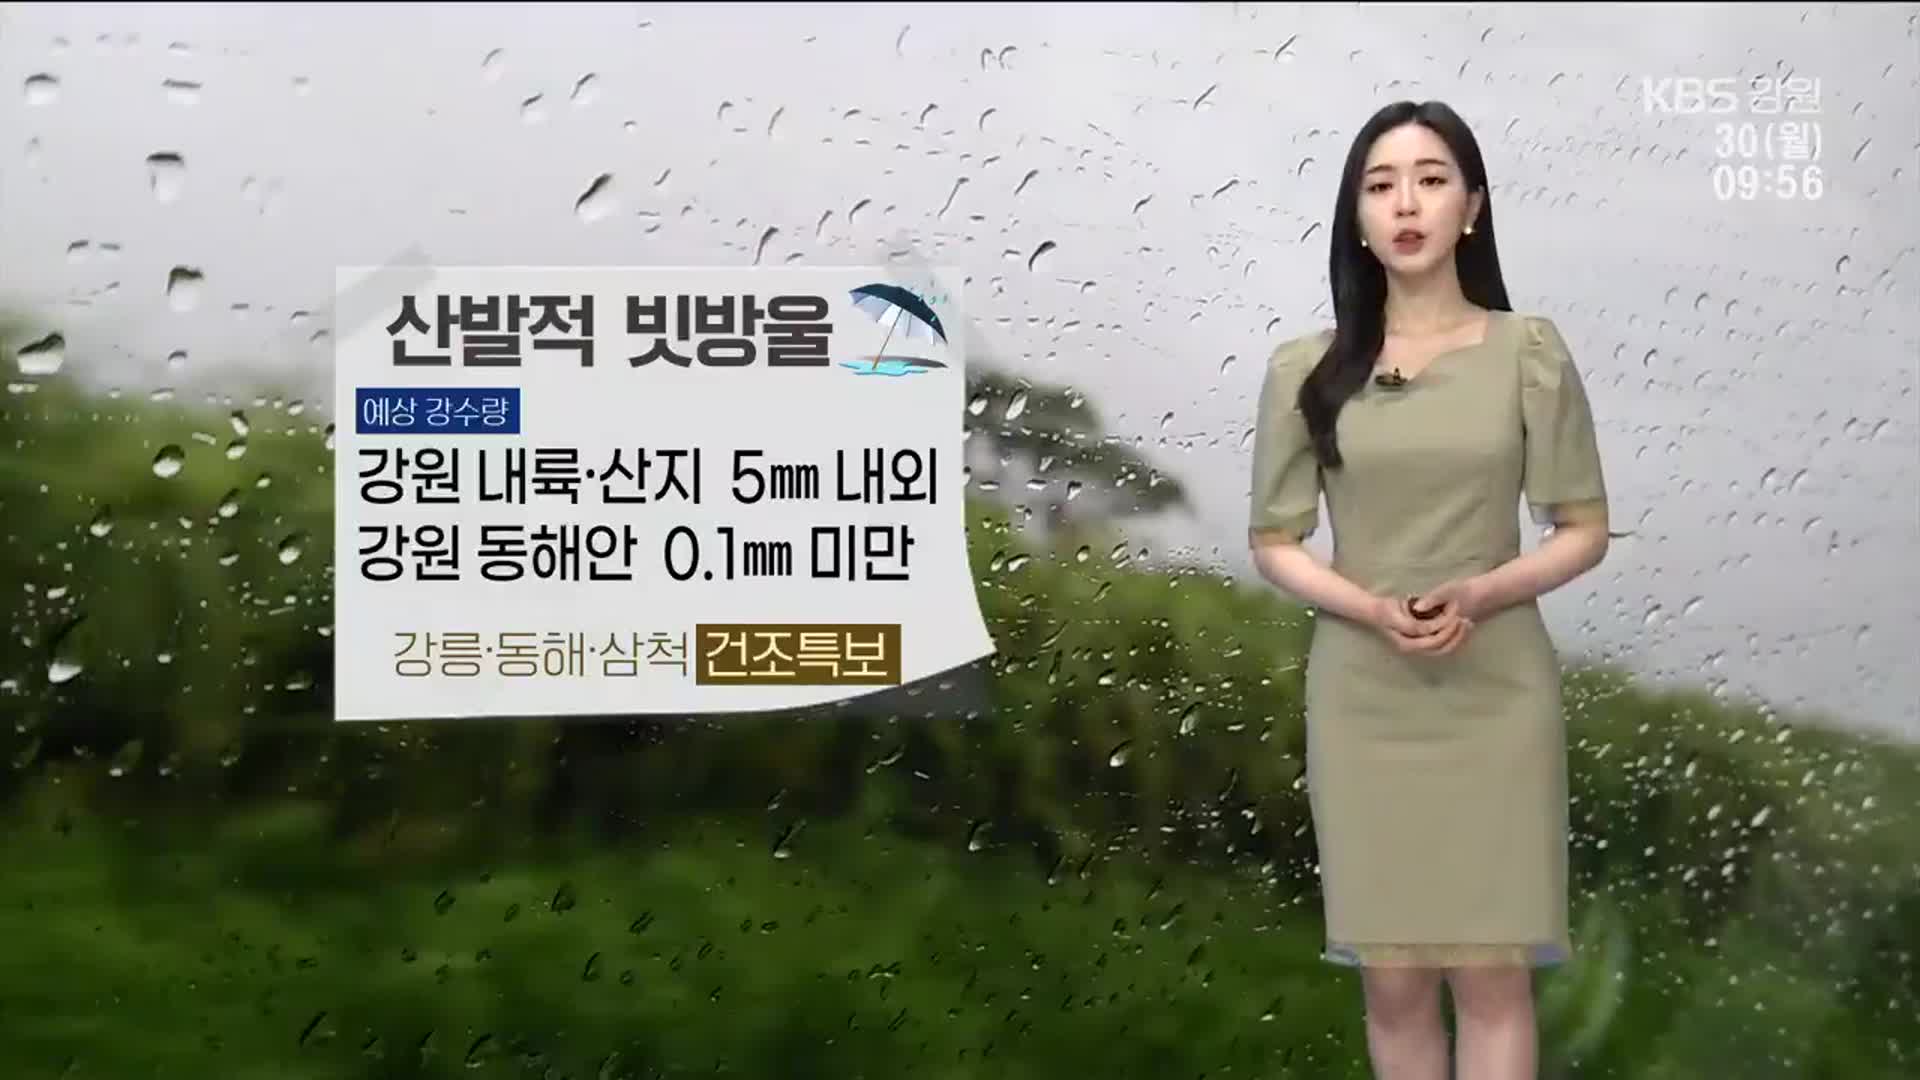 [날씨] 강원 5mm 내외 비…강릉·동해 등 ‘건조특보’